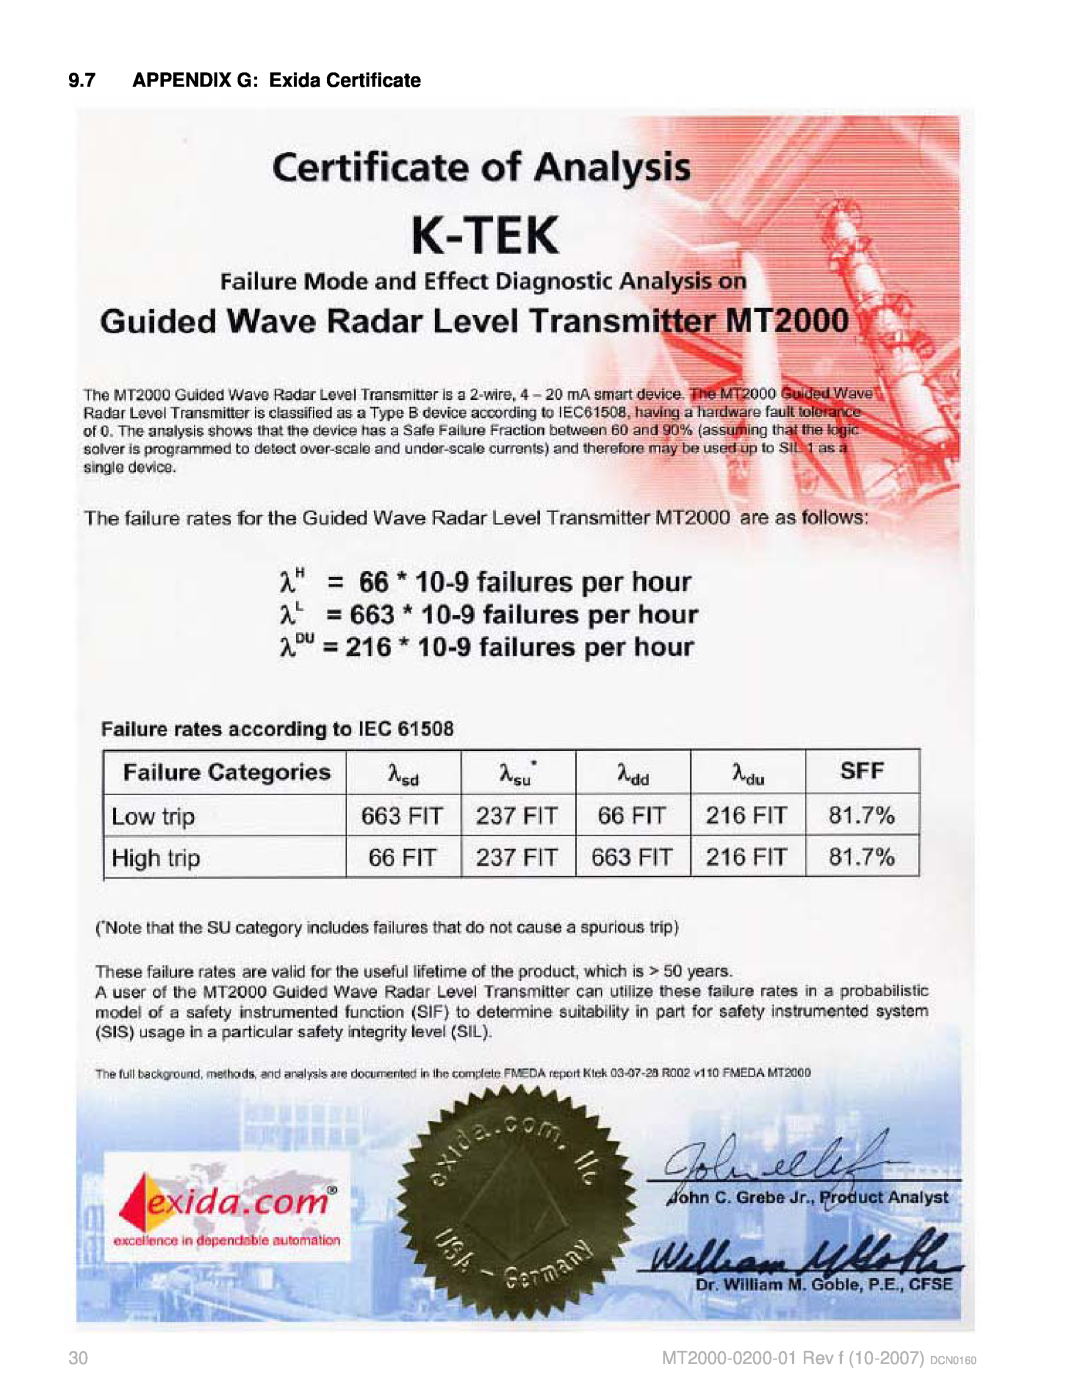 K-Tec manual 9.7APPENDIX G Exida Certificate, MT2000-0200-01Rev f 10-2007 DCN0160 